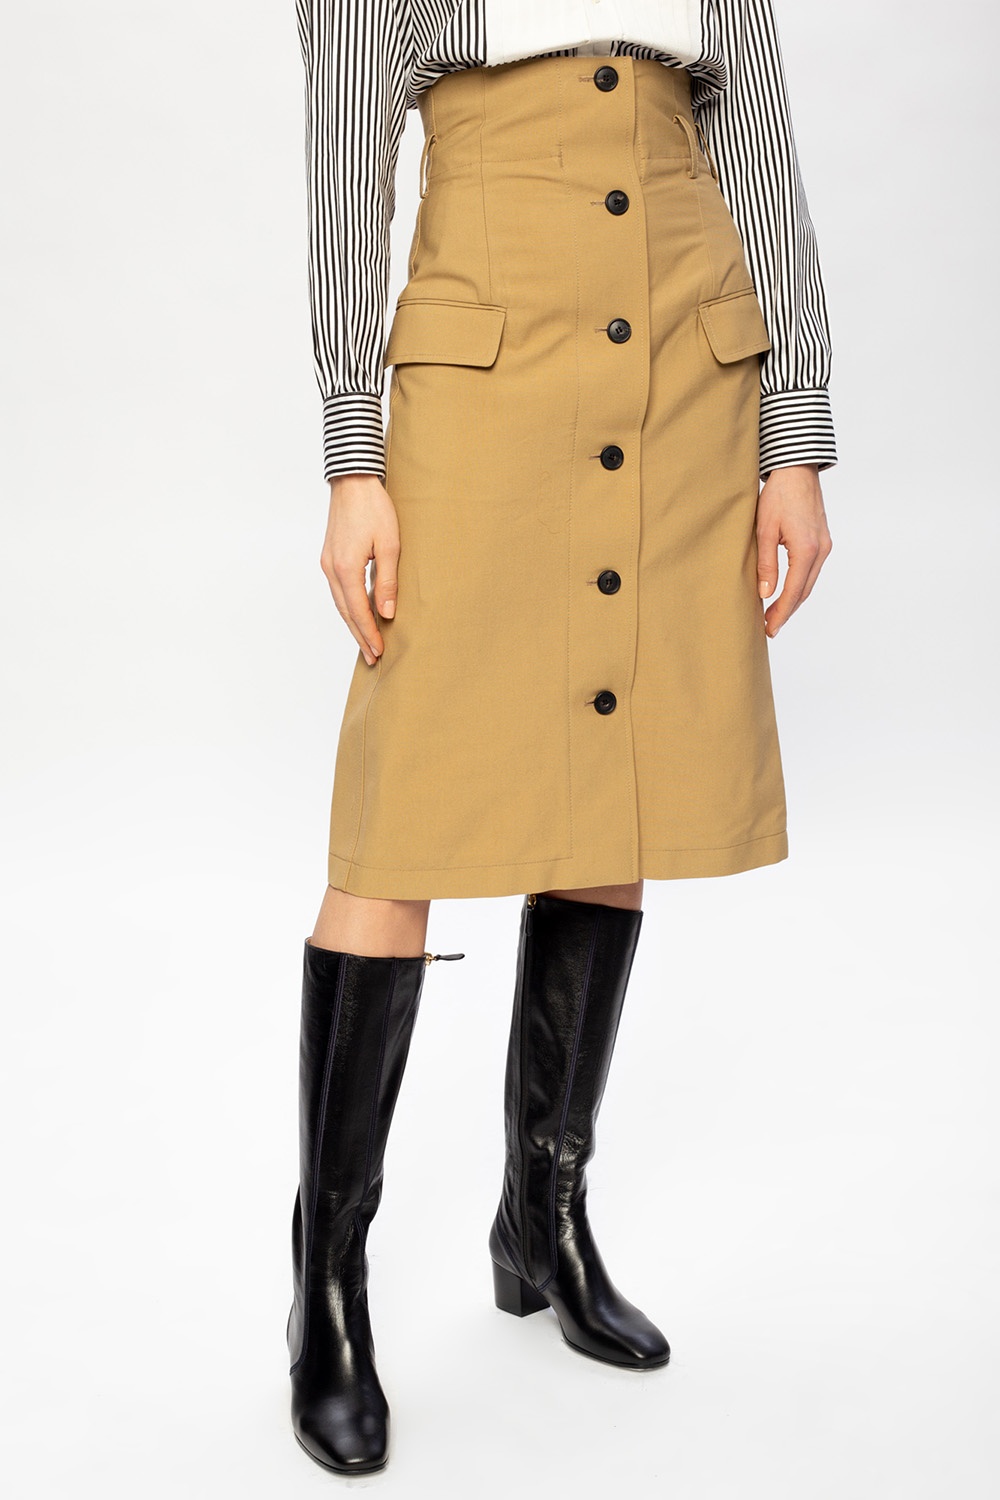 Victoria Beckham Skirt with stitching details